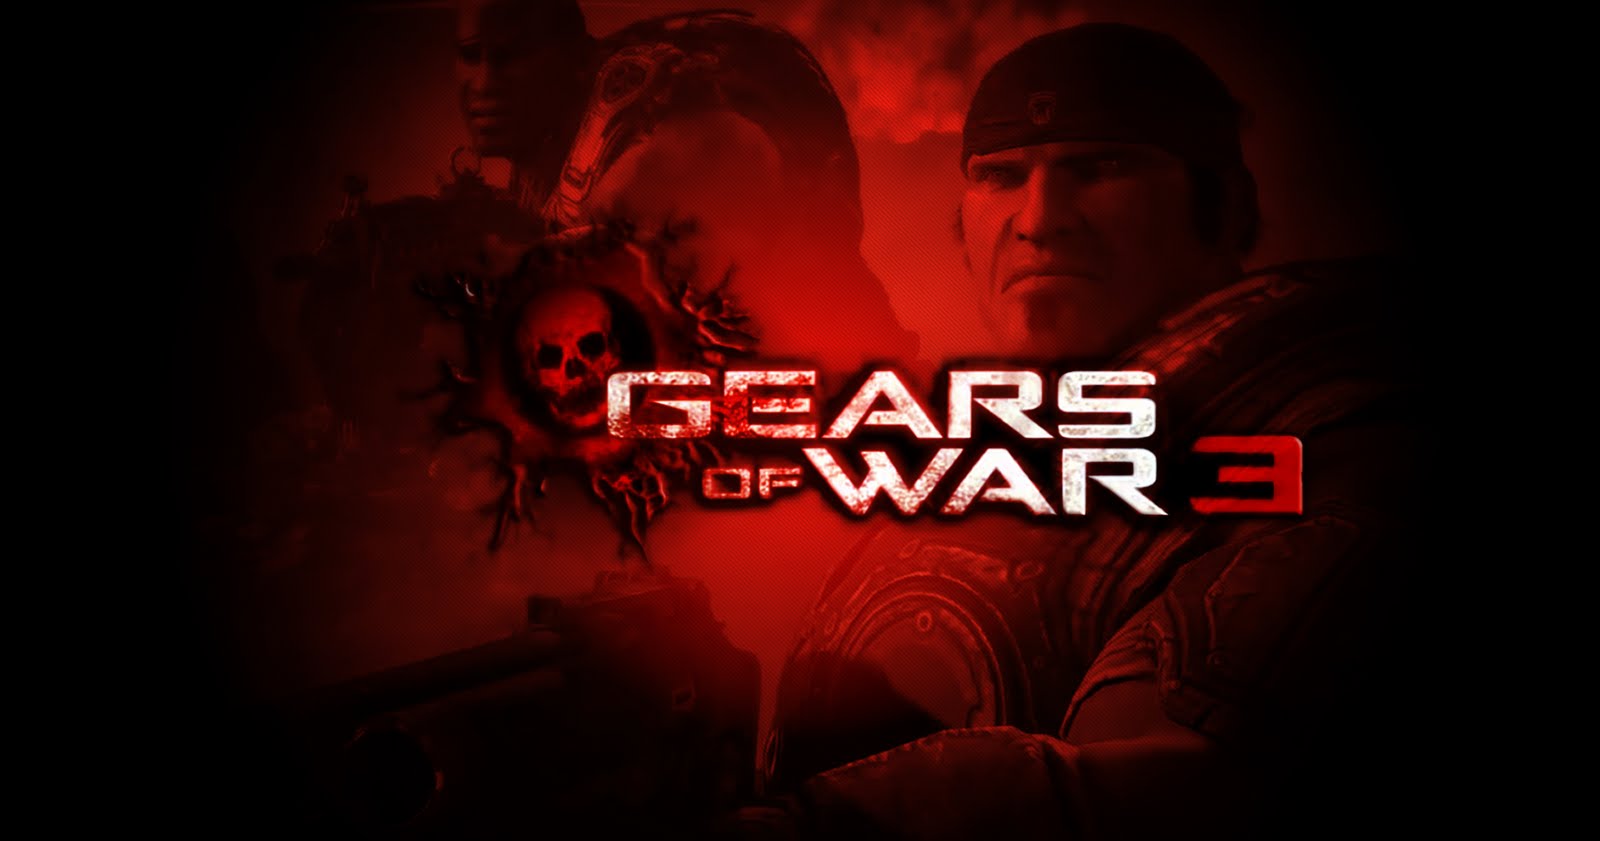 Wallpapers de Gears of war 3 HD DragonXoft